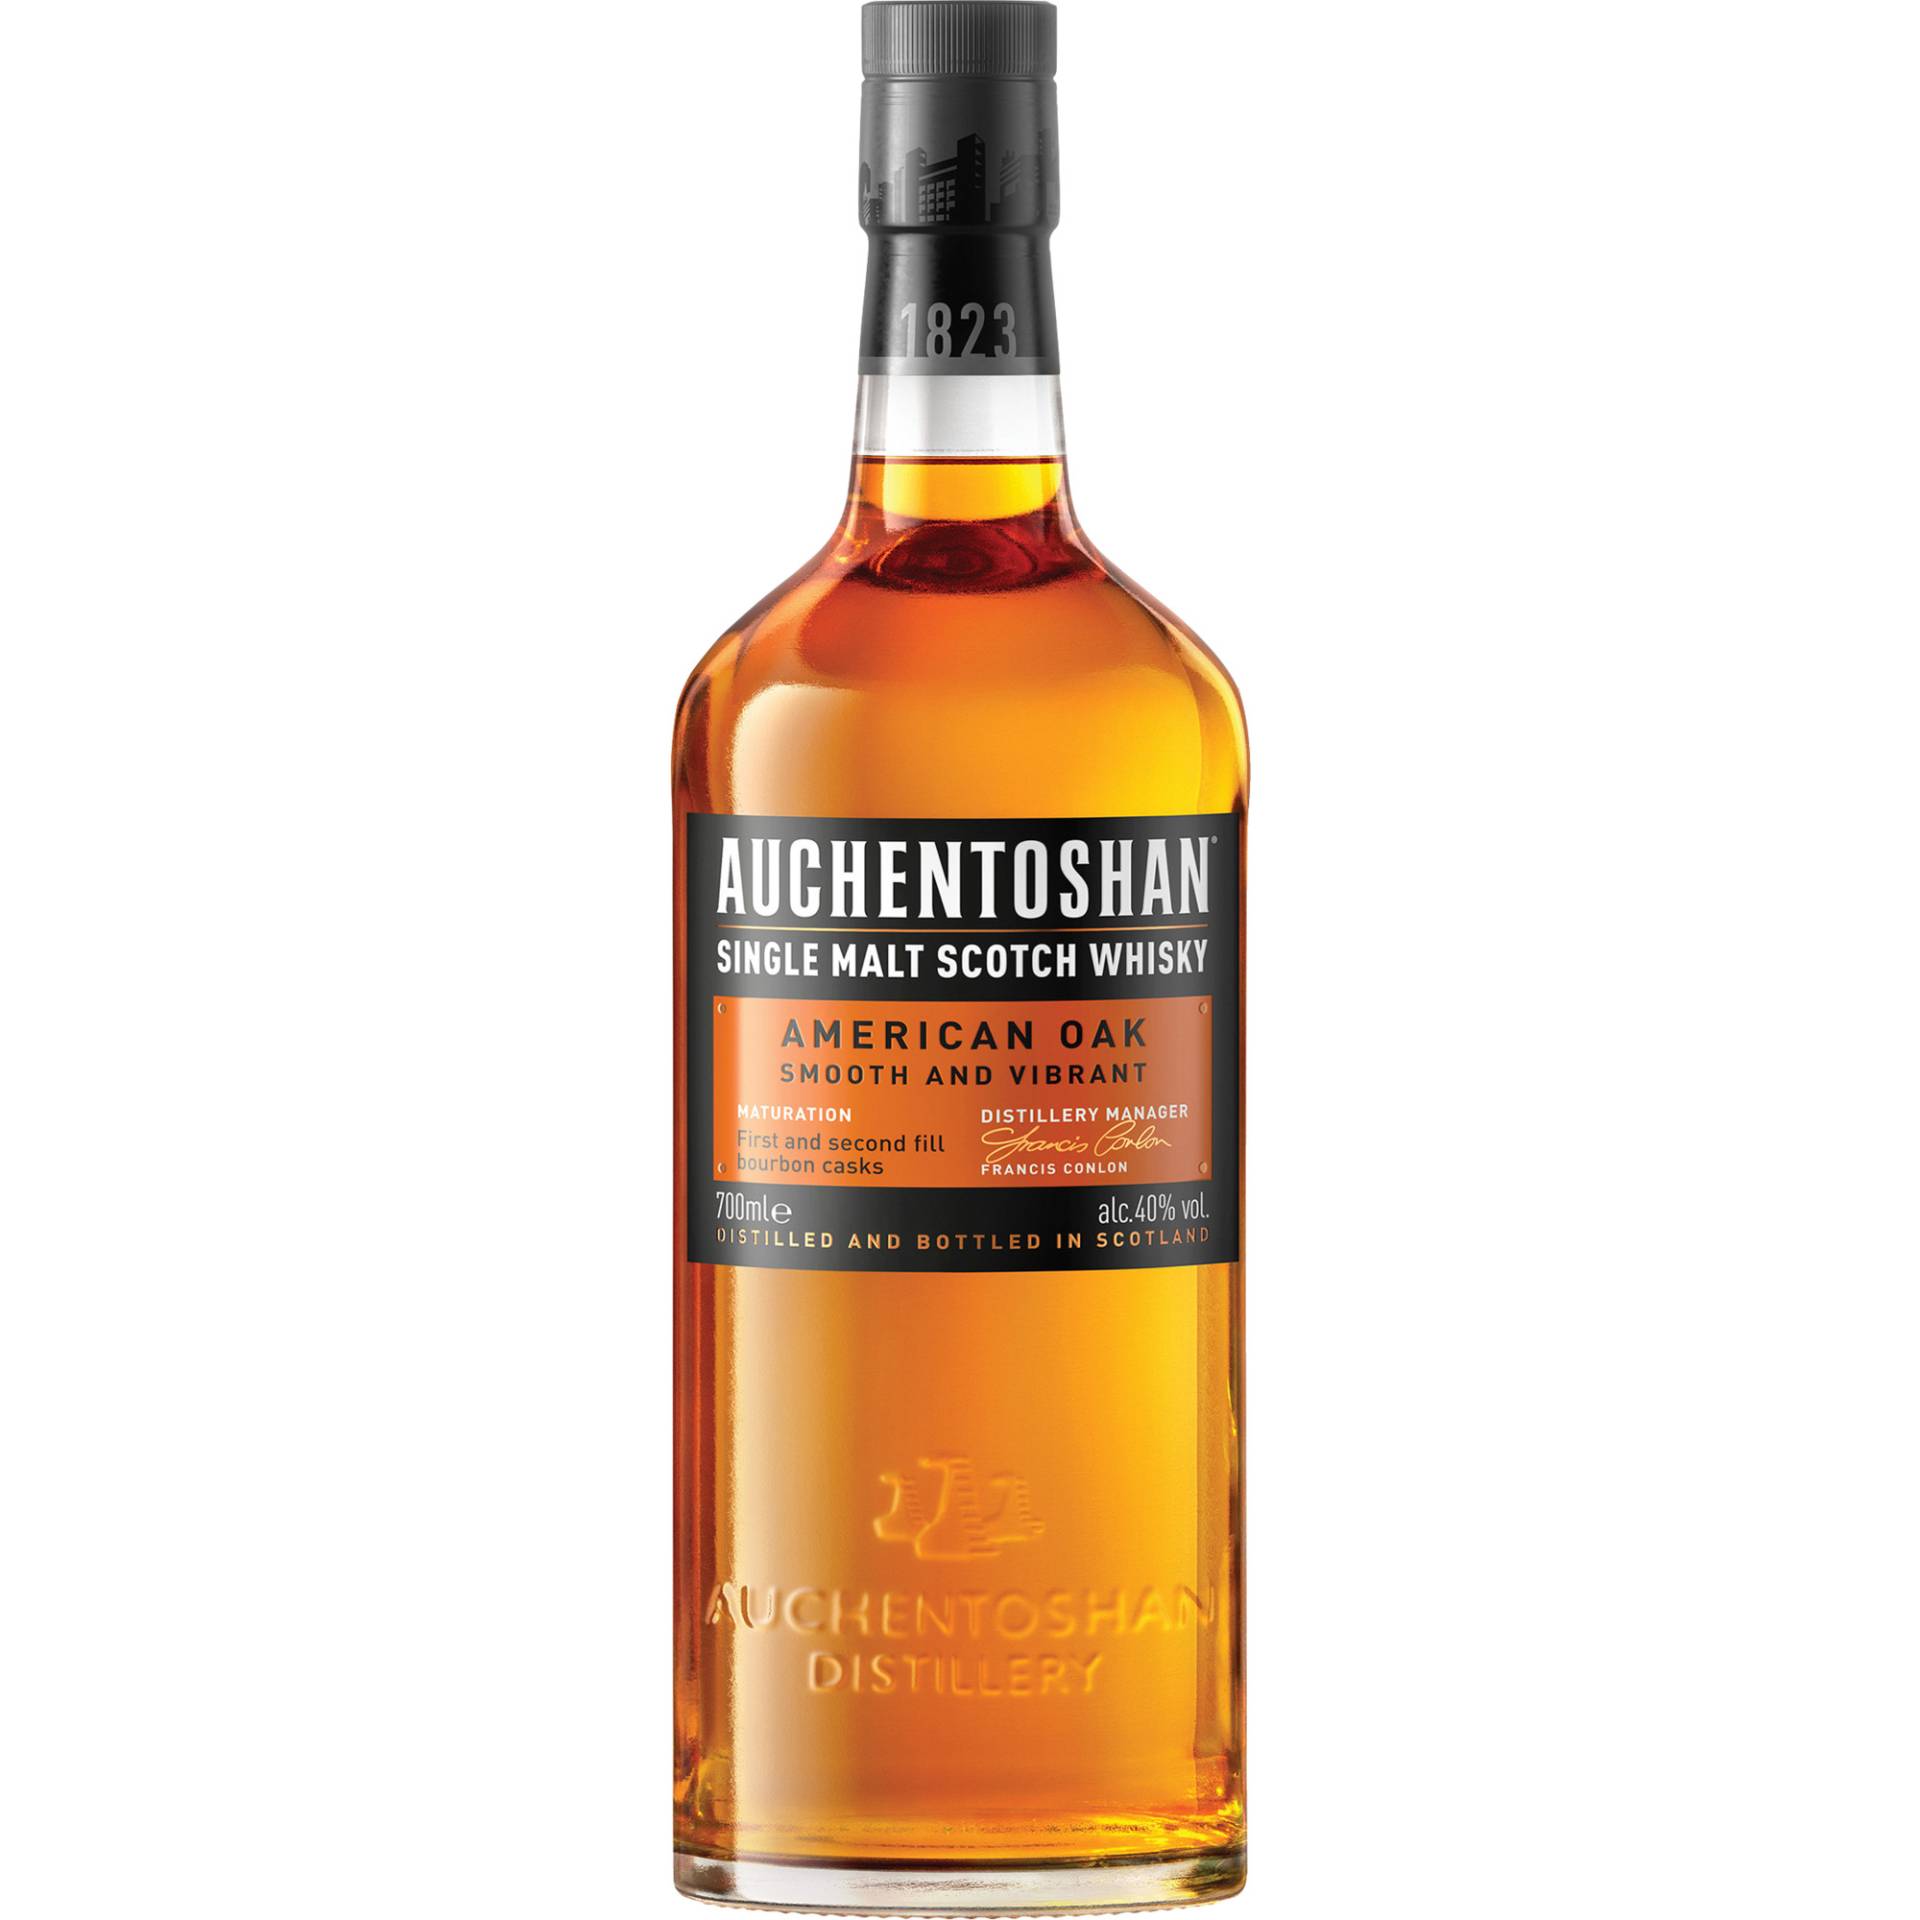 Auchentoshan American Oak Single Malt, Scotch Whisky, 0,7 L, 40% Vol., Schottland, Spirituosen von Auchentoshan Distillery, Glasgow G8l 4SJ, Scotland